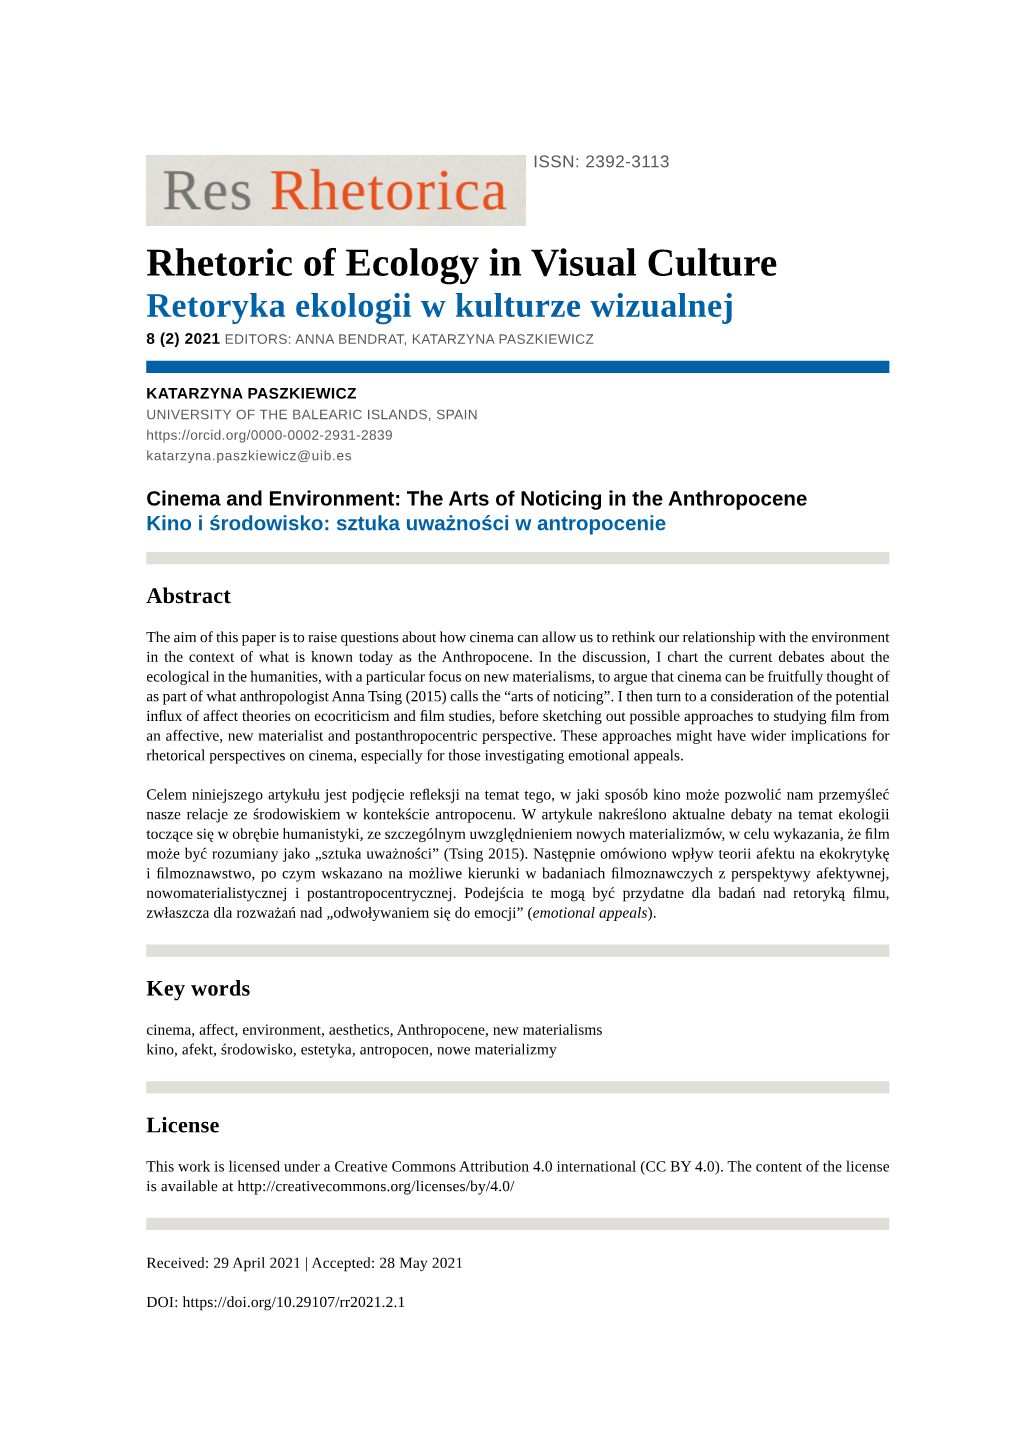 Rhetoric of Ecology in Visual Culture Retoryka Ekologii W Kulturze Wizualnej 8 (2) 2021 EDITORS: ANNA BENDRAT, KATARZYNA PASZKIEWICZ